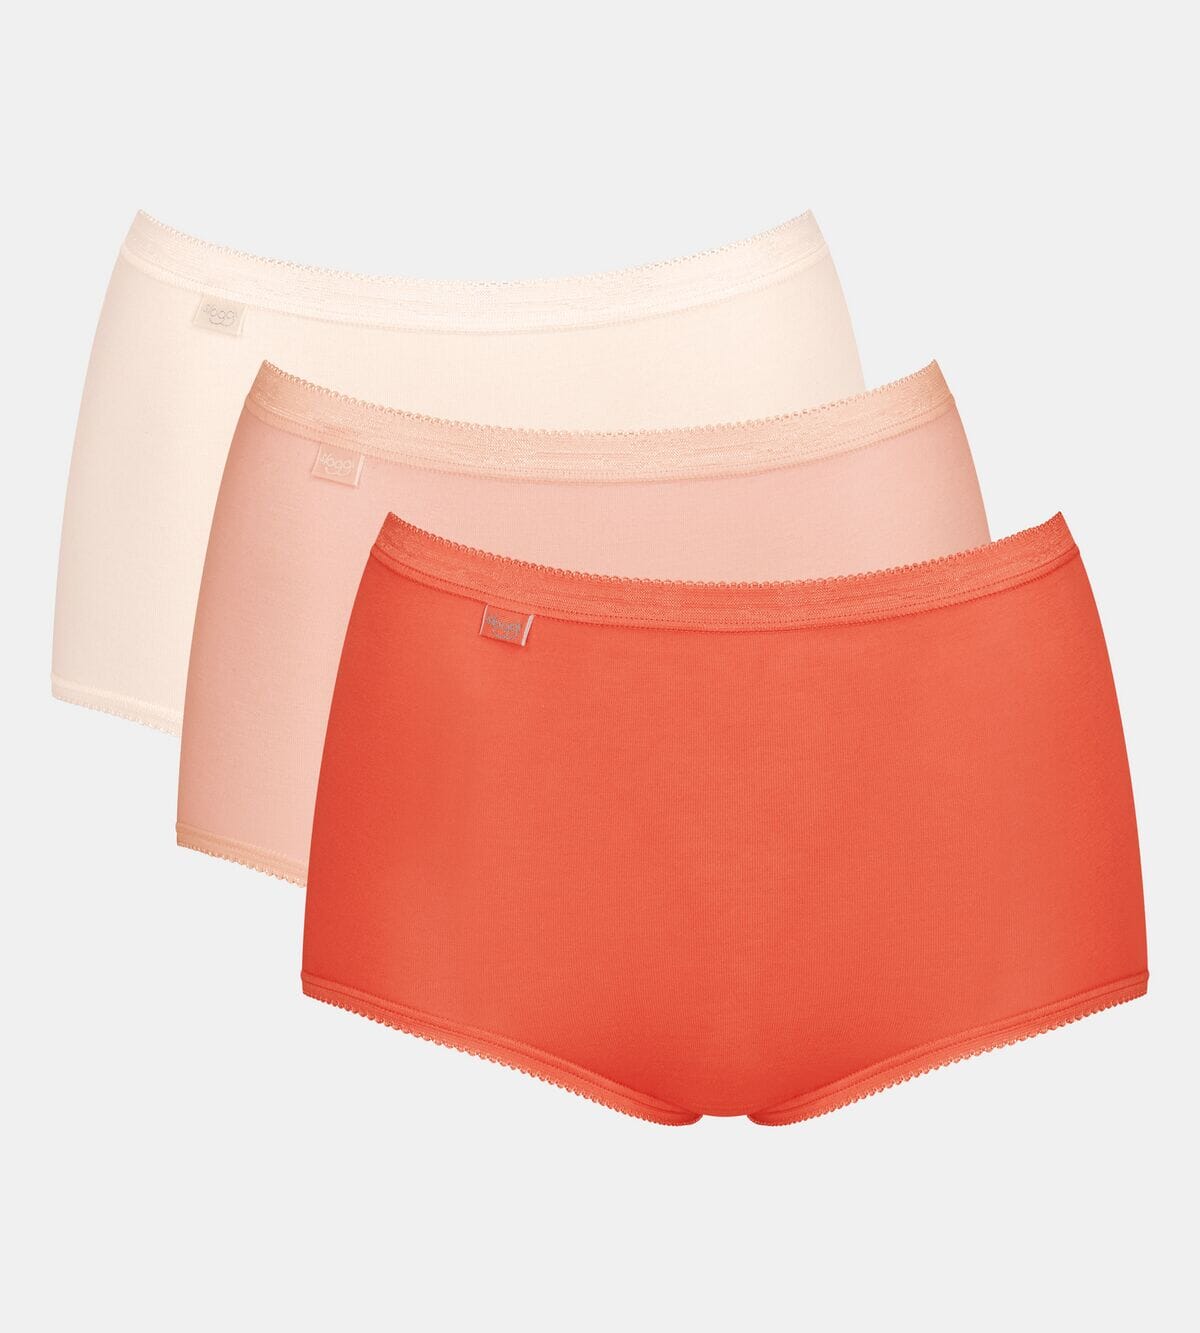 Sloggi - Basic+ Maxi 3-pack - Multi-Colour V011 – Into Underwear